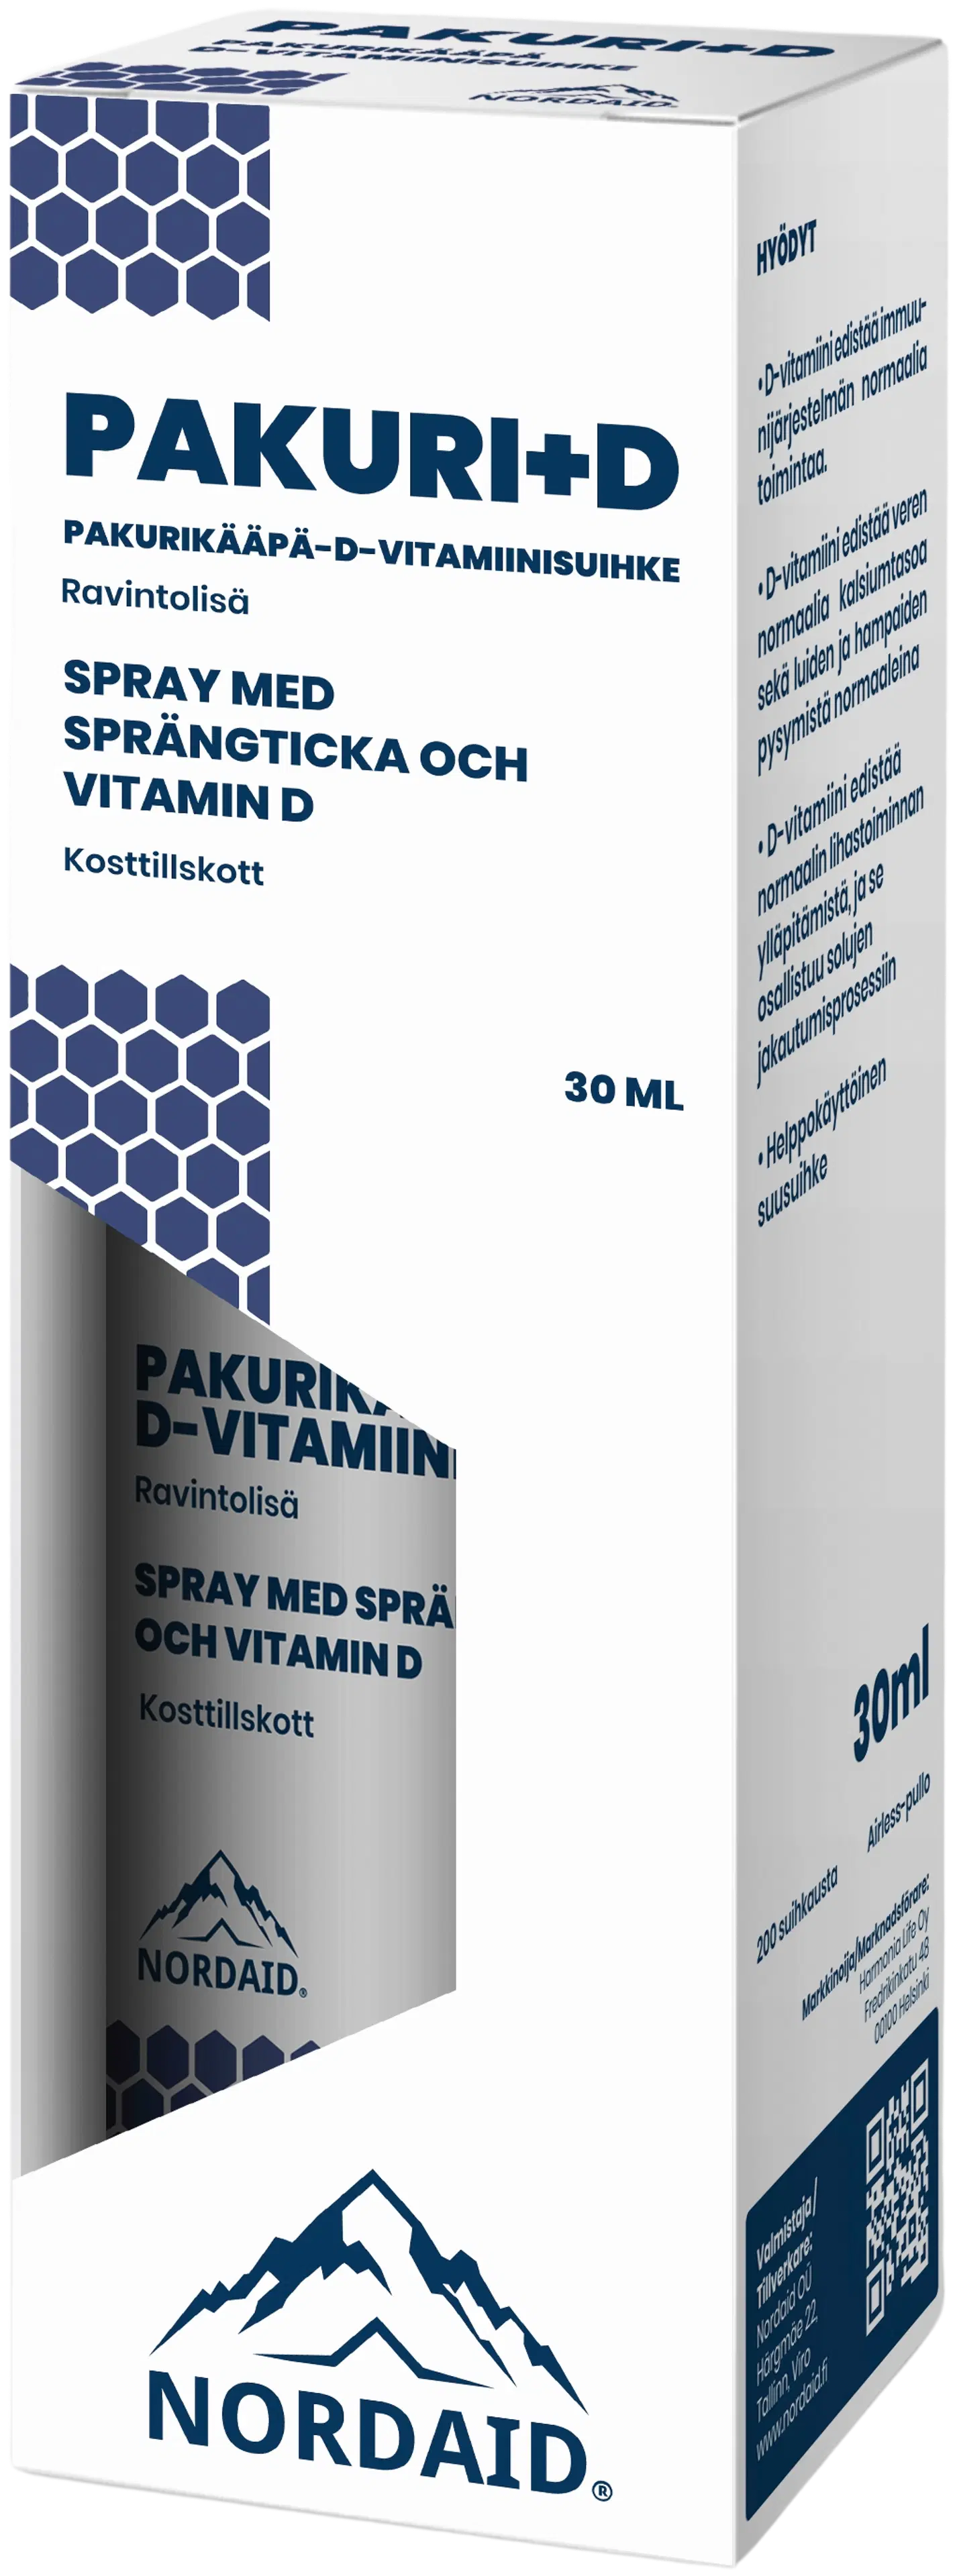 Nordaid Pakuri+D-vitamiinisuihke 30 ml